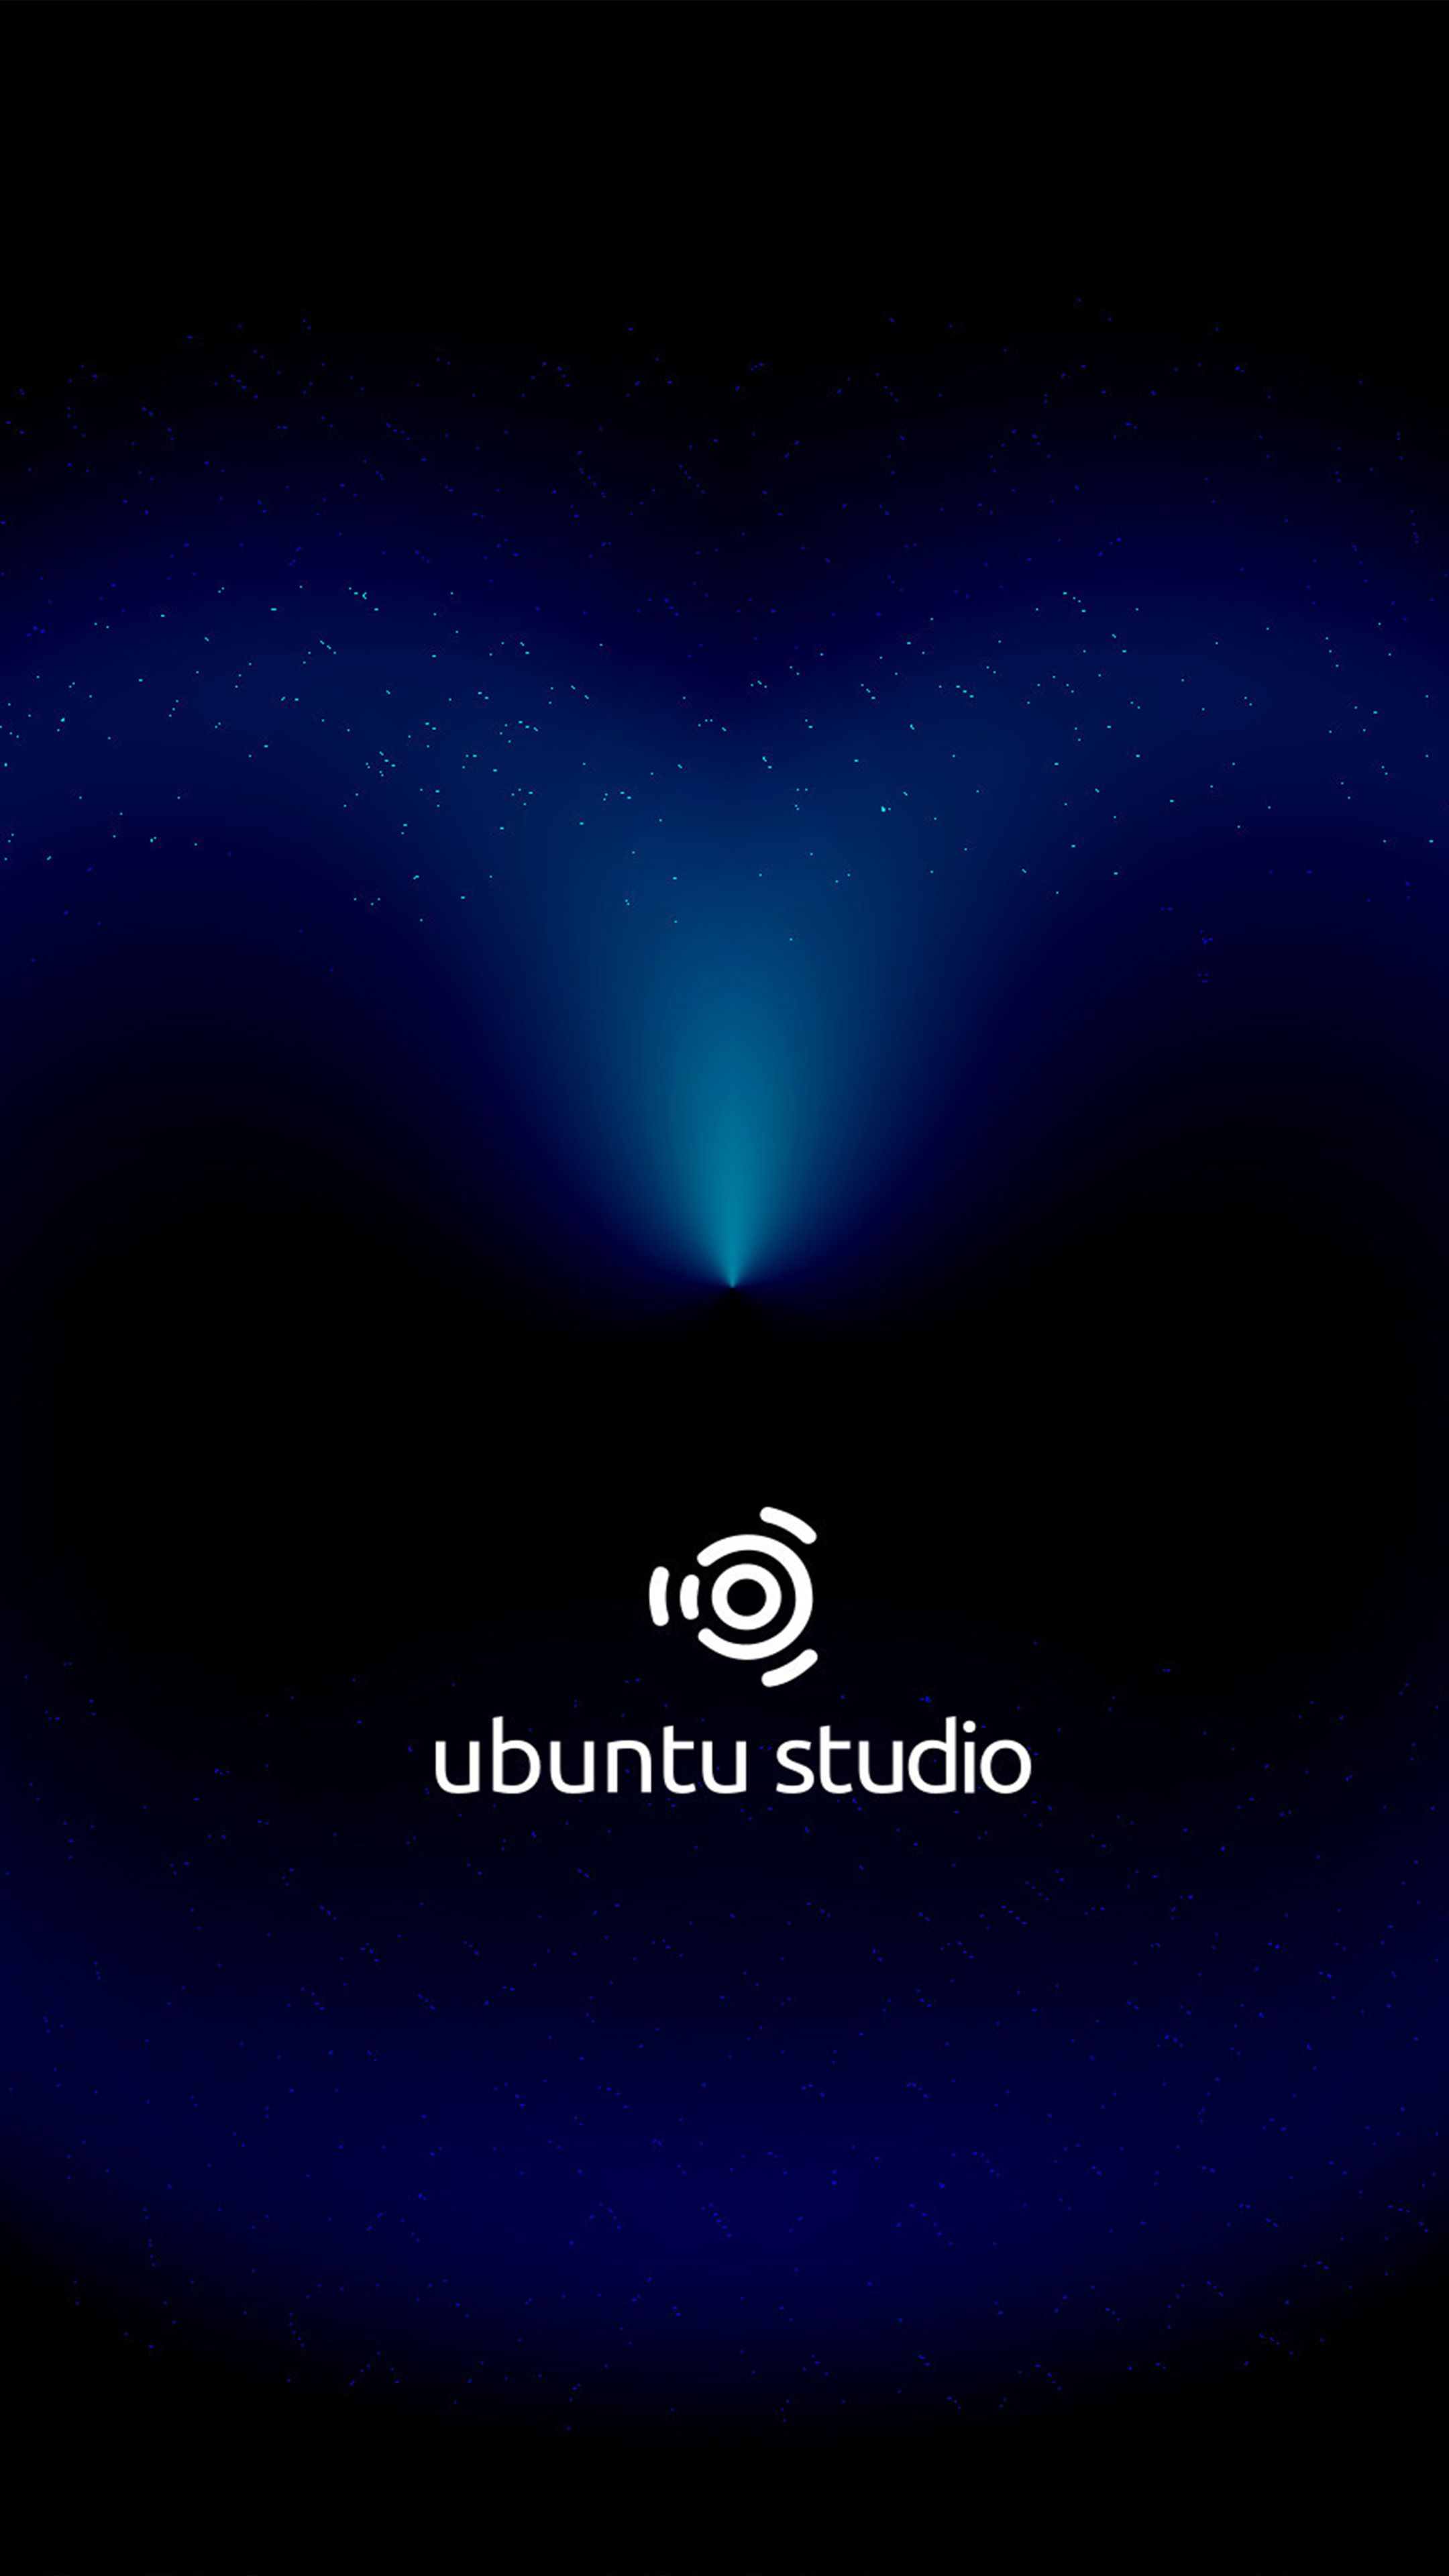 Ubuntu Studio Dark Cosmic Black 4k Ultra Hd Mobile Wallpaper